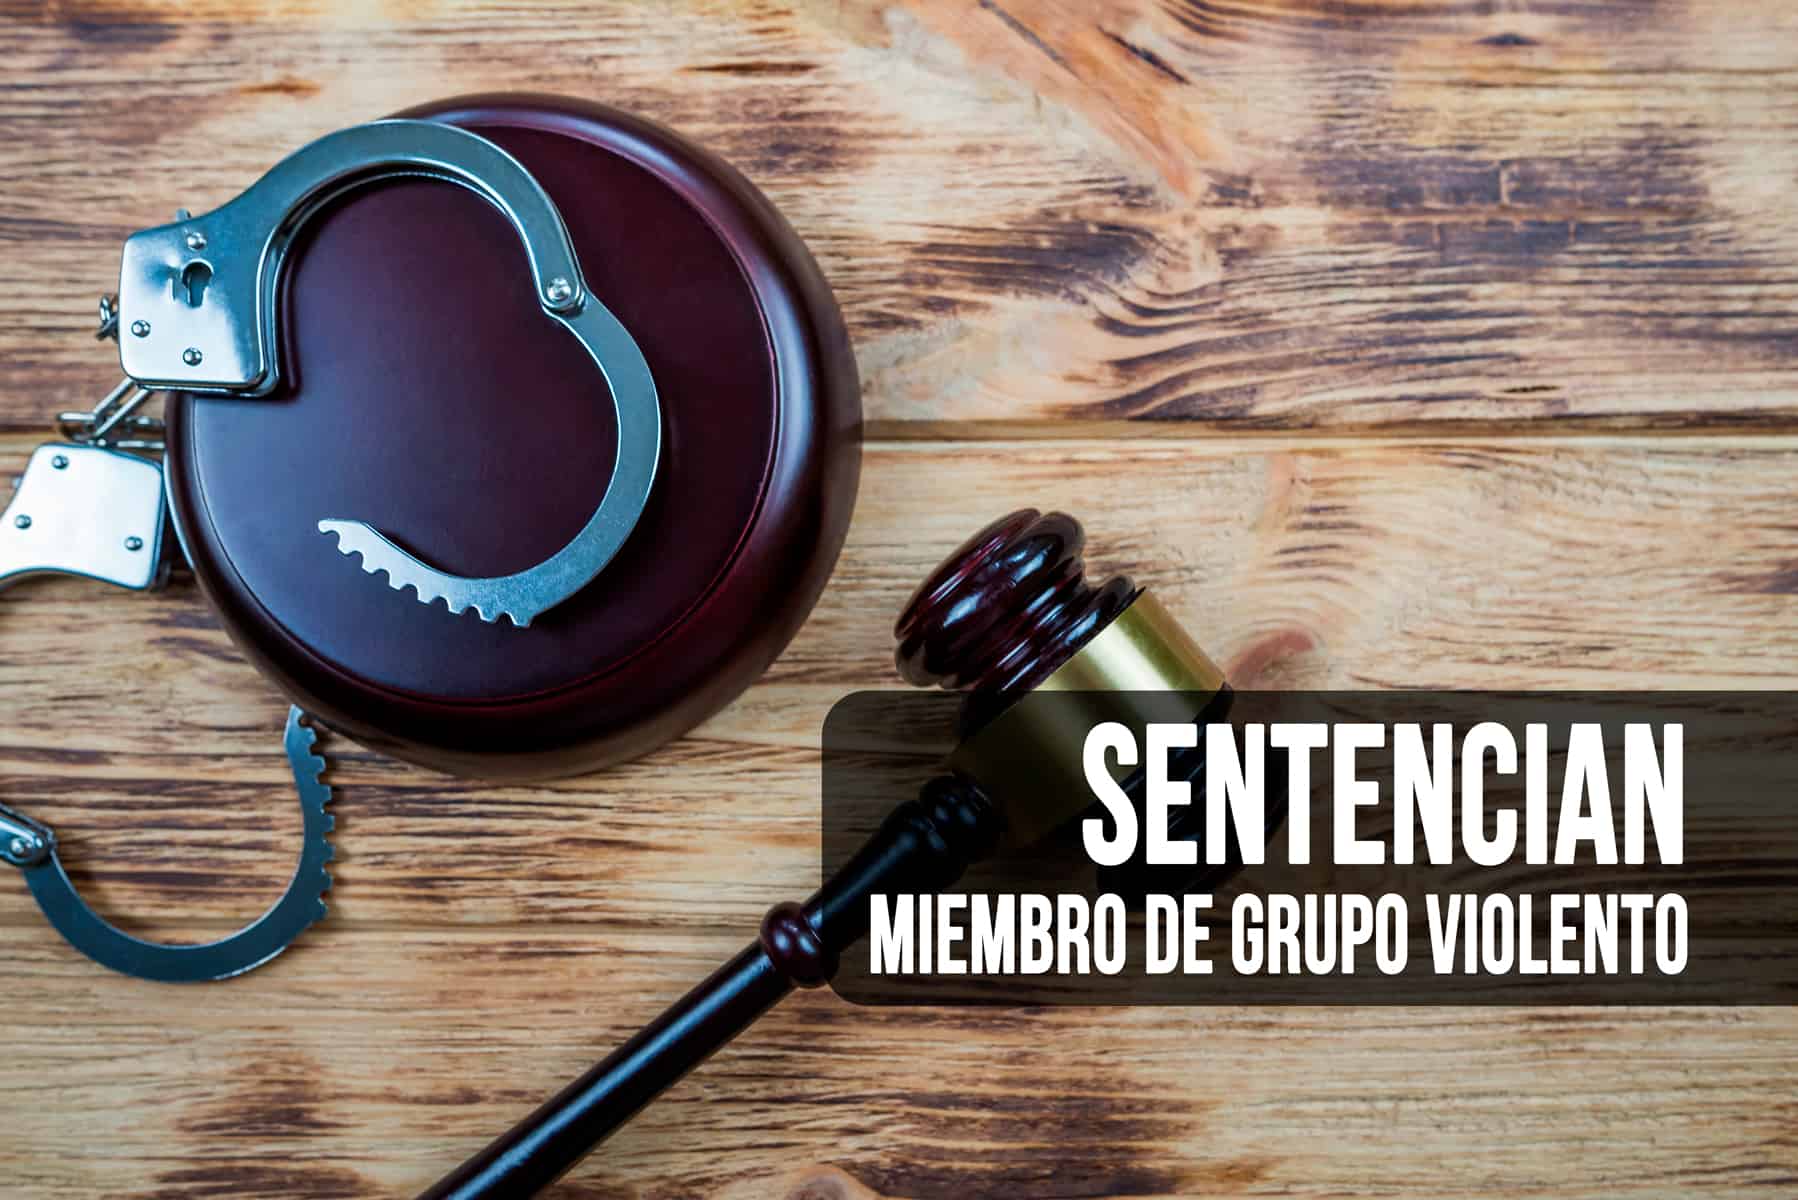 Sentencian a Miembro de Grupo Violento que Operaba en Cuba, México, España y el Sur de la Florida